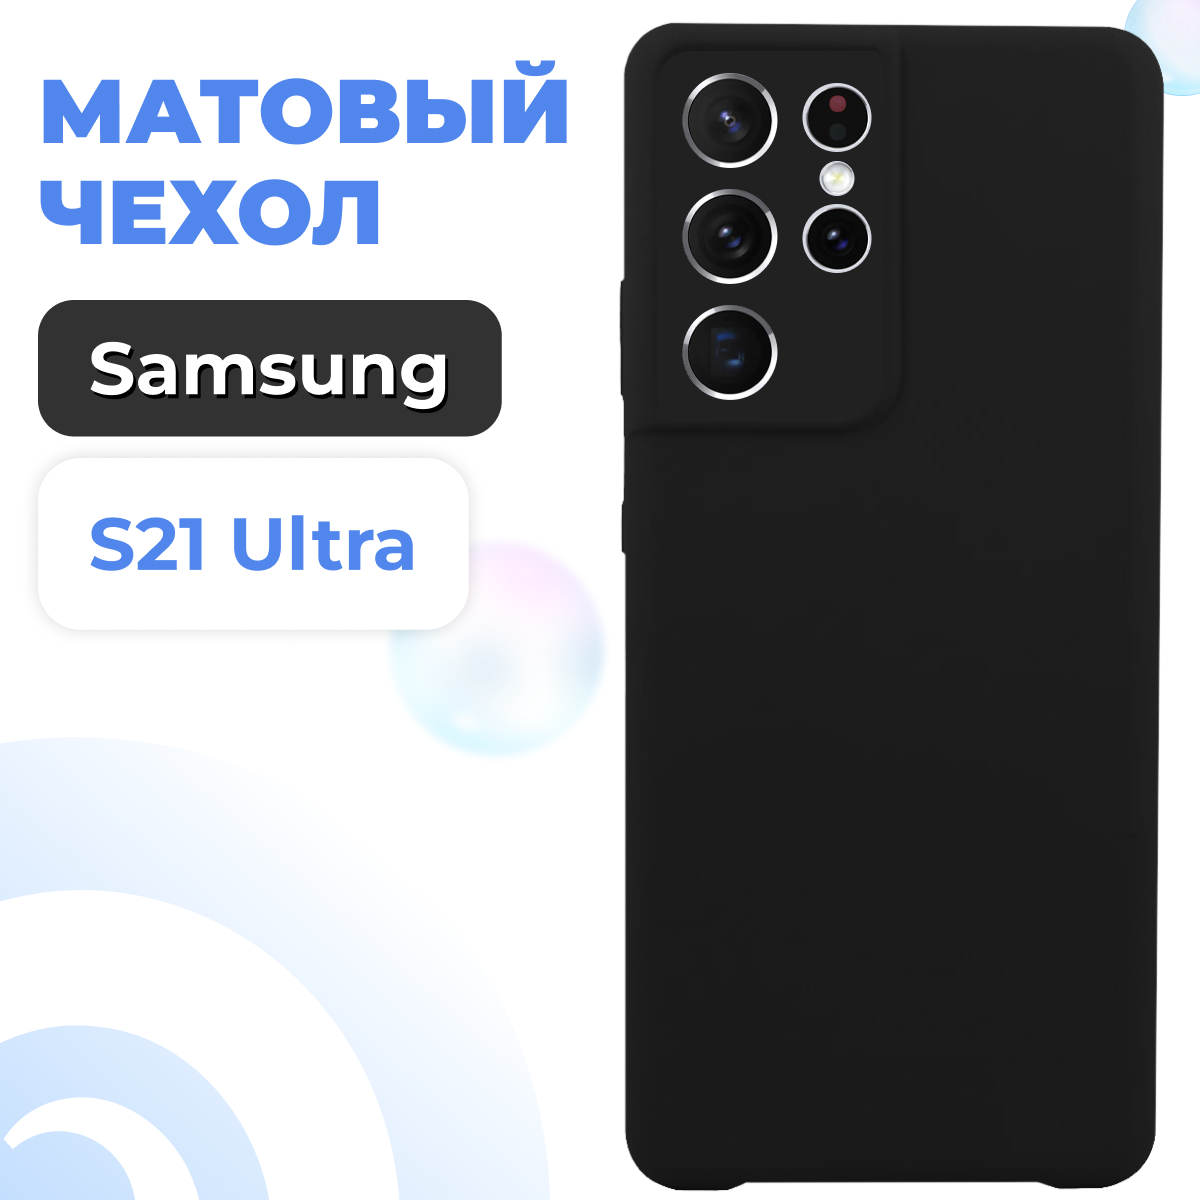 Ультратонкий матовый чехол для смартфона Samsung Galaxy S21 Ultra / Защитный силиконовый чехол для Самсунг Галакси С21 Ультра Rosin (Черный)